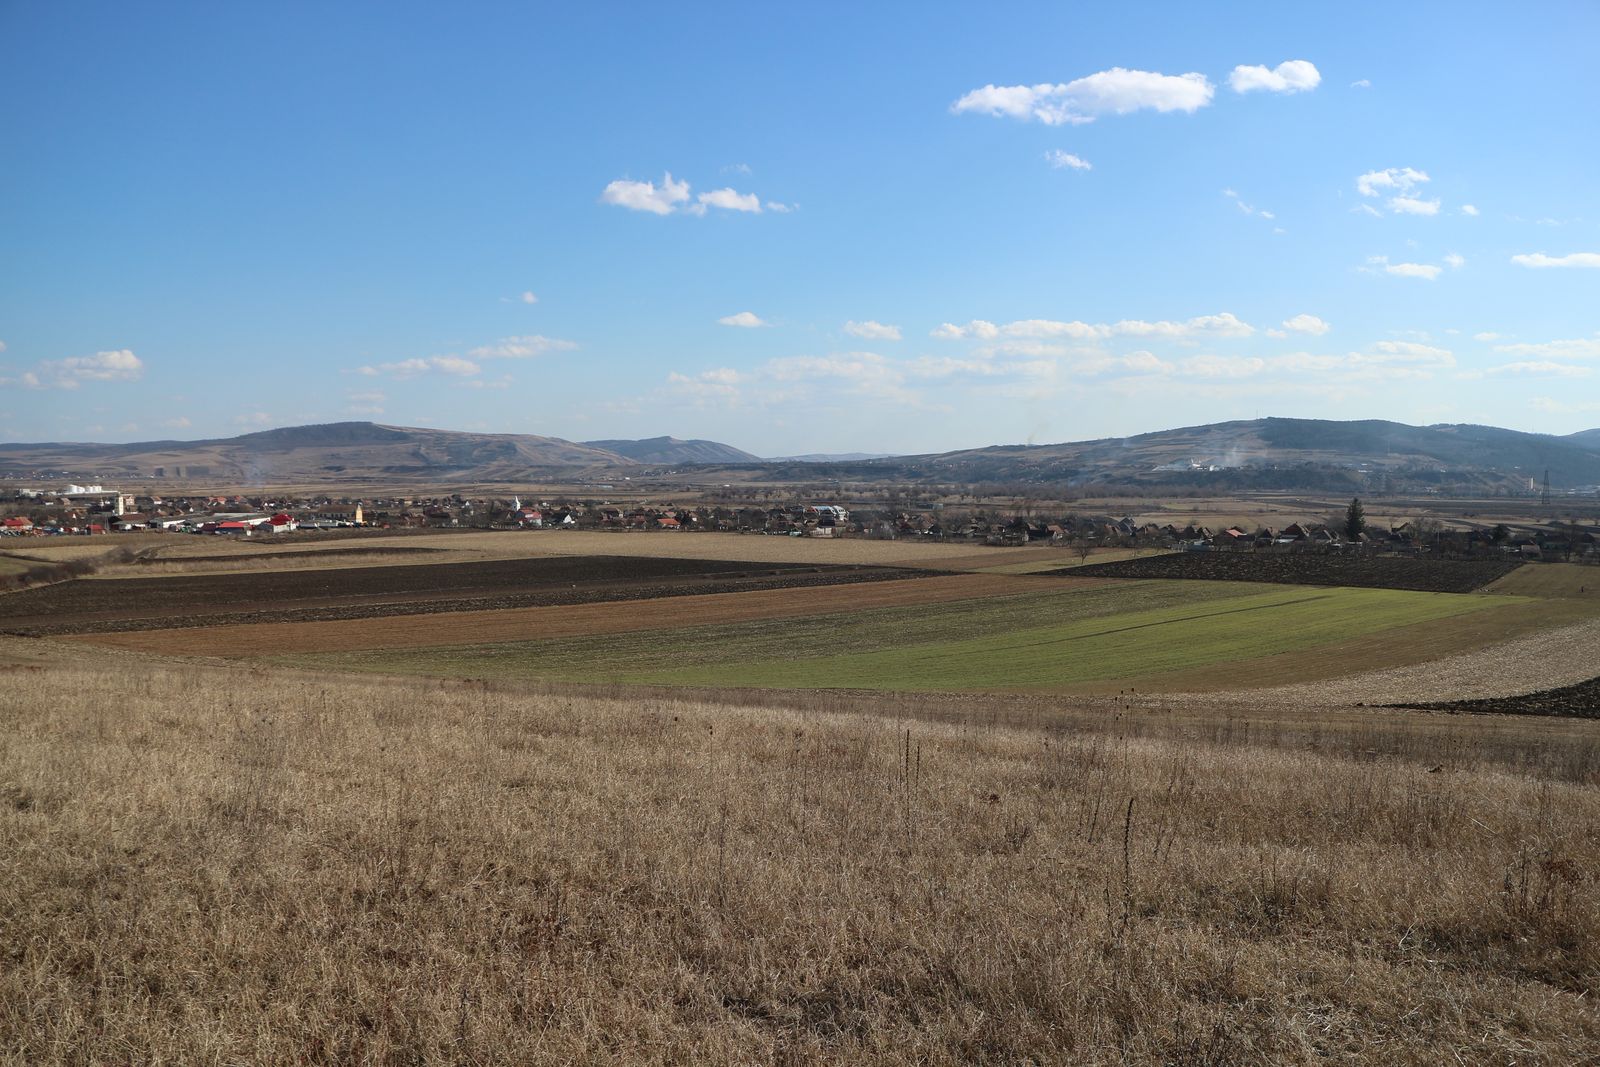 Războieni-Cetate. Blick auf den Fundplatz im Mureştal. Das Lager liegt im Stoppelfeld am Rand des Dorfes, auf den umliegenden Flächen bis an den Rand des Hügels im Vordergrund befanden sich damals der vicus und die ersten Ausläufer der ländlichen Besiedlung.